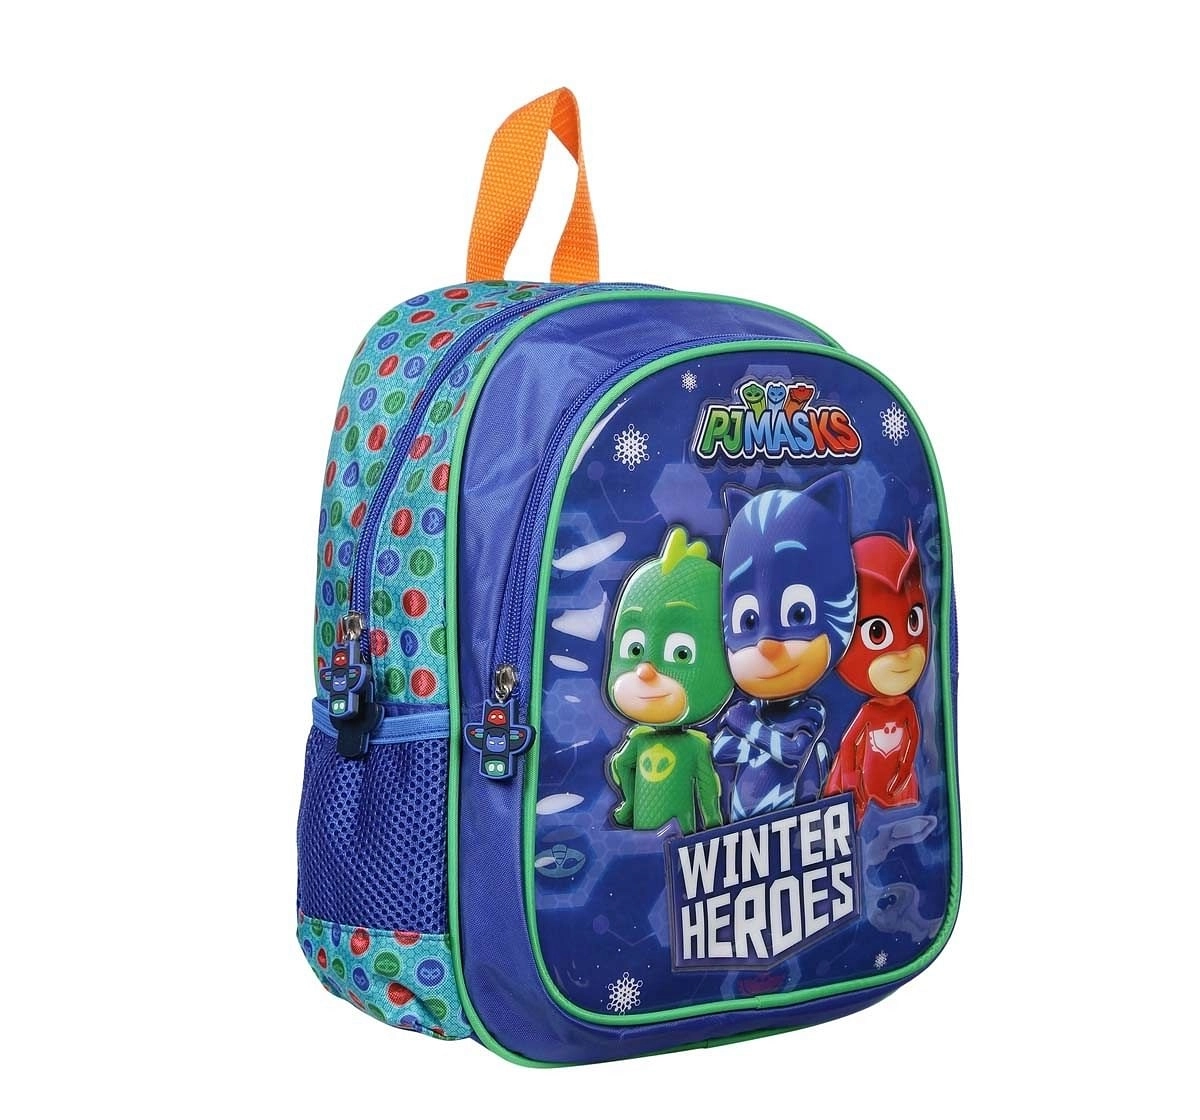 Pj Mask Winter Heroes 12 Backpack Bags for Kids age 3Y+ 